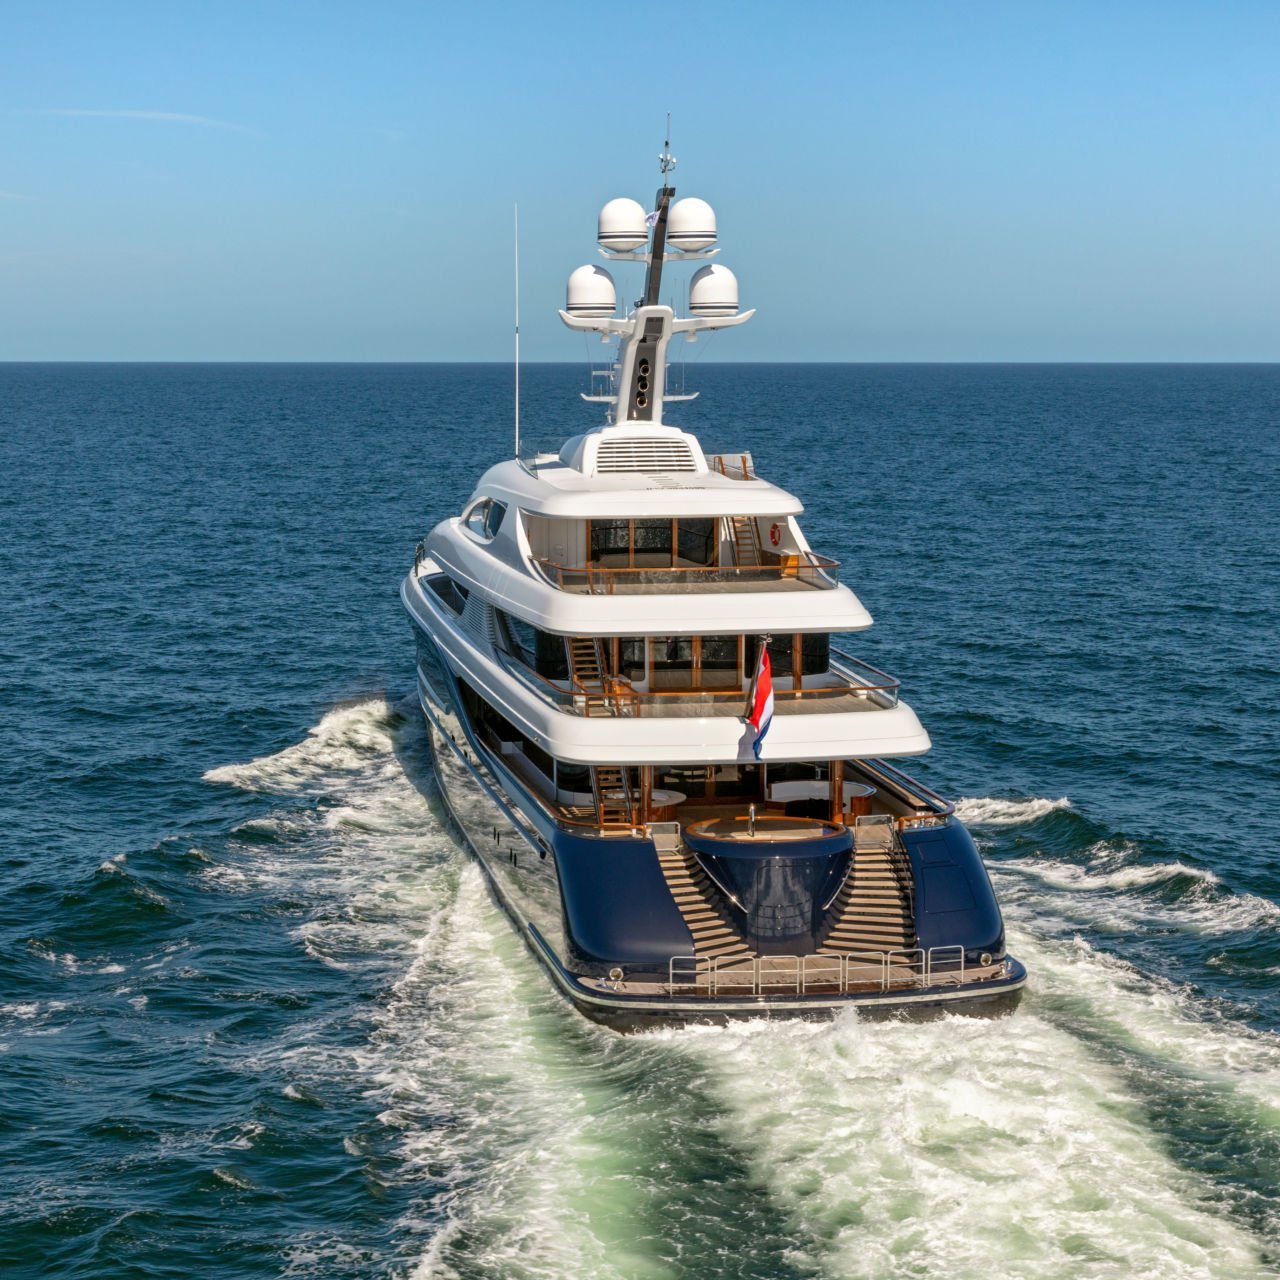 PODIUM yacht - Feadship - 2020 - propriétaire Roger Penske